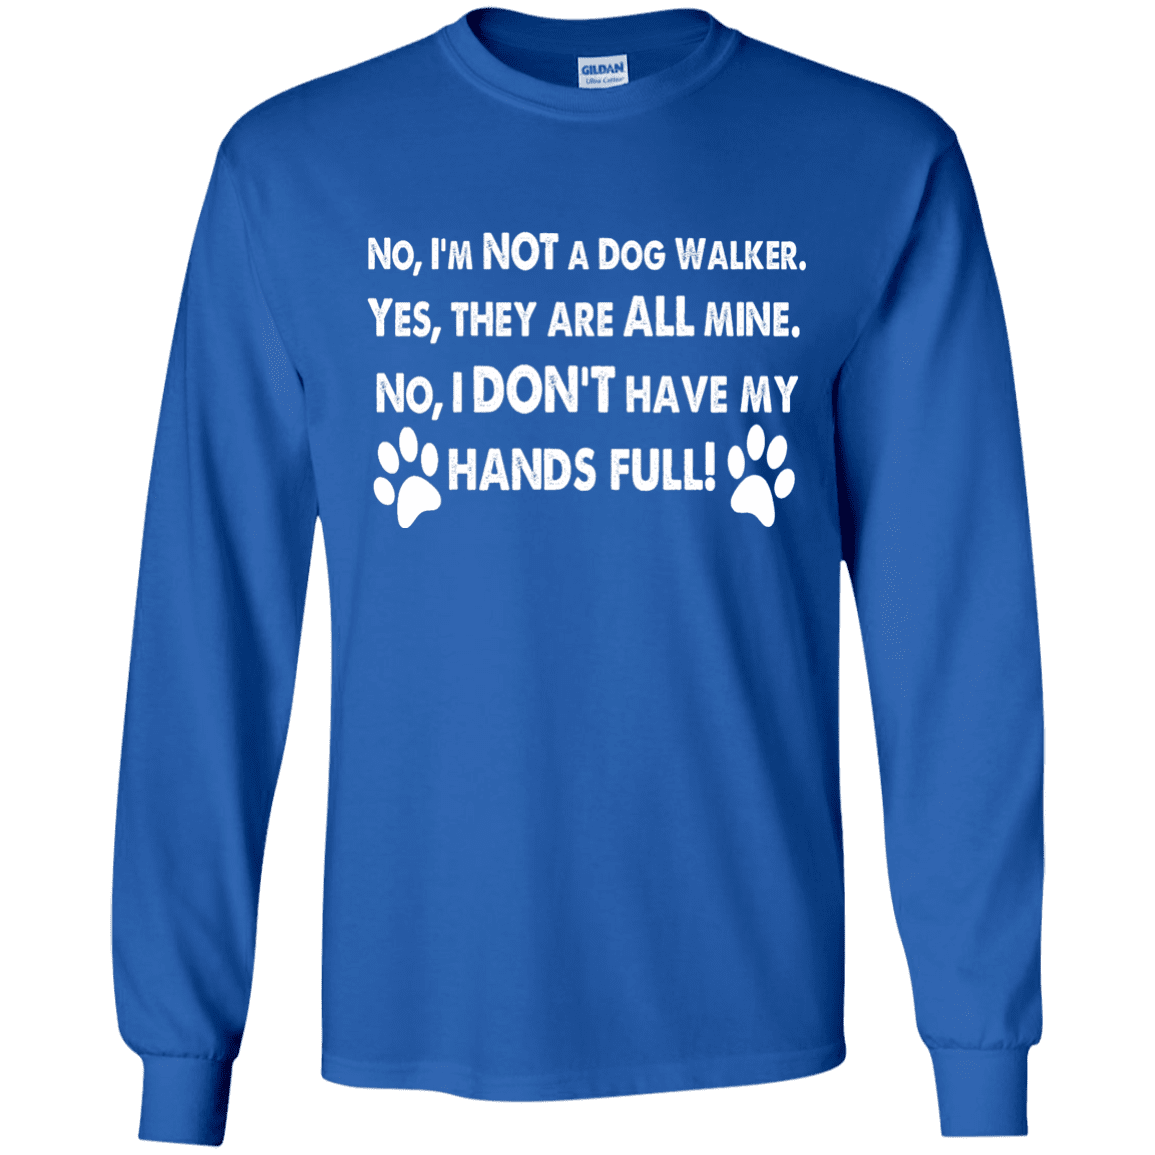 Not A Dog Walker - Long Sleeve T Shirt.